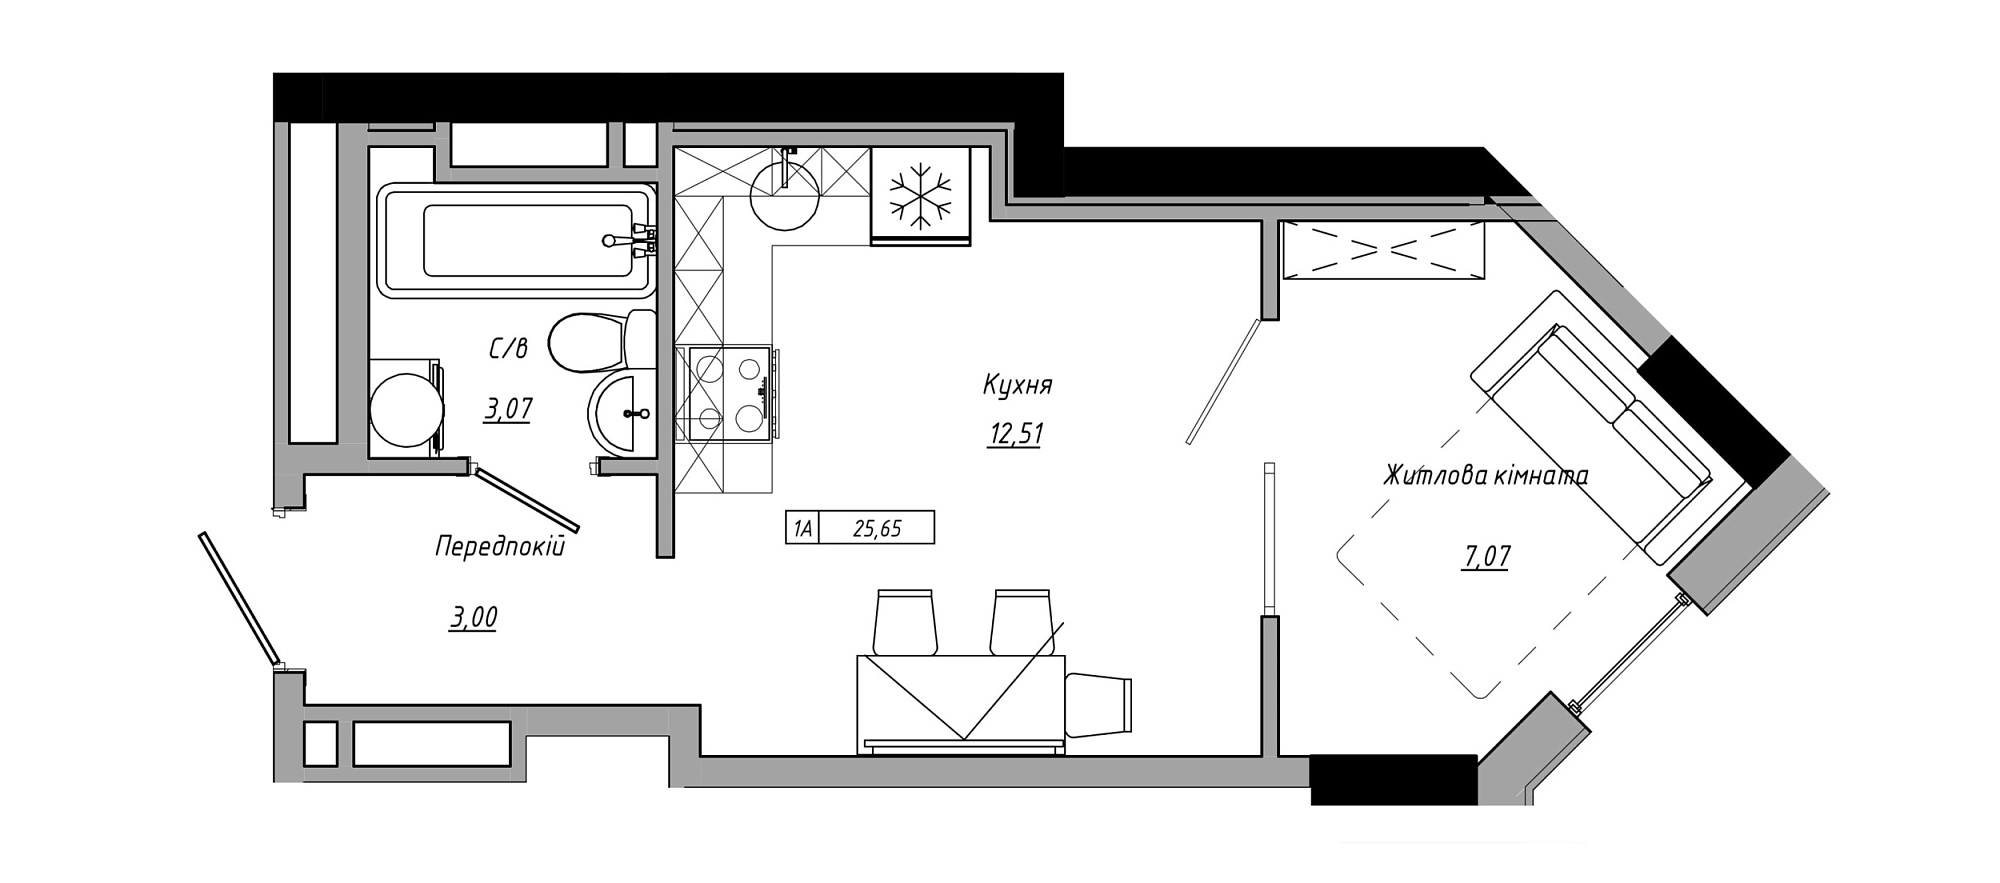 Планування 1-к квартира площею 25.65м2, AB-21-07/00001.